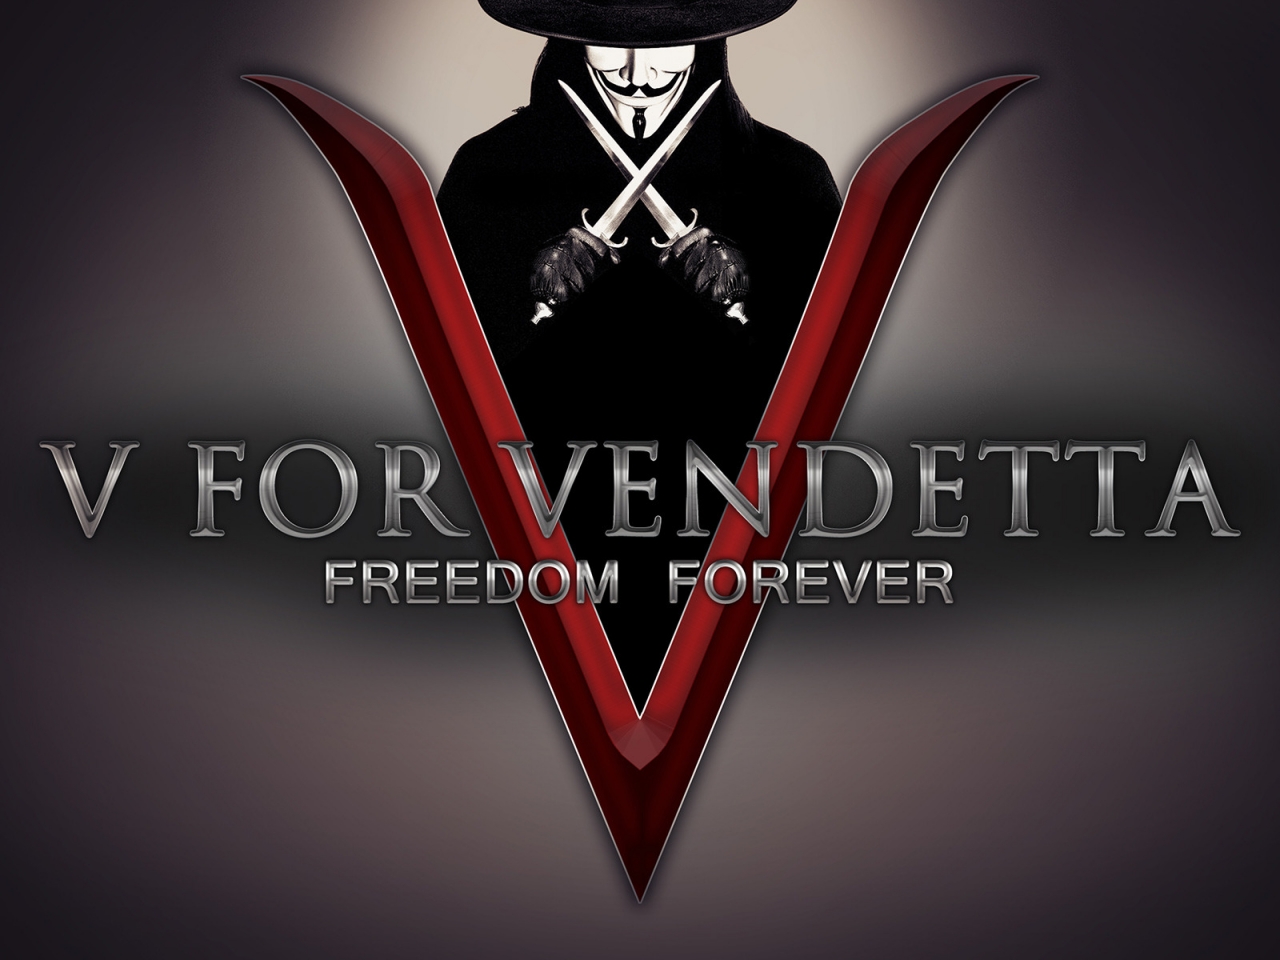 V for Vendetta Freedom Forever for 1280 x 960 resolution